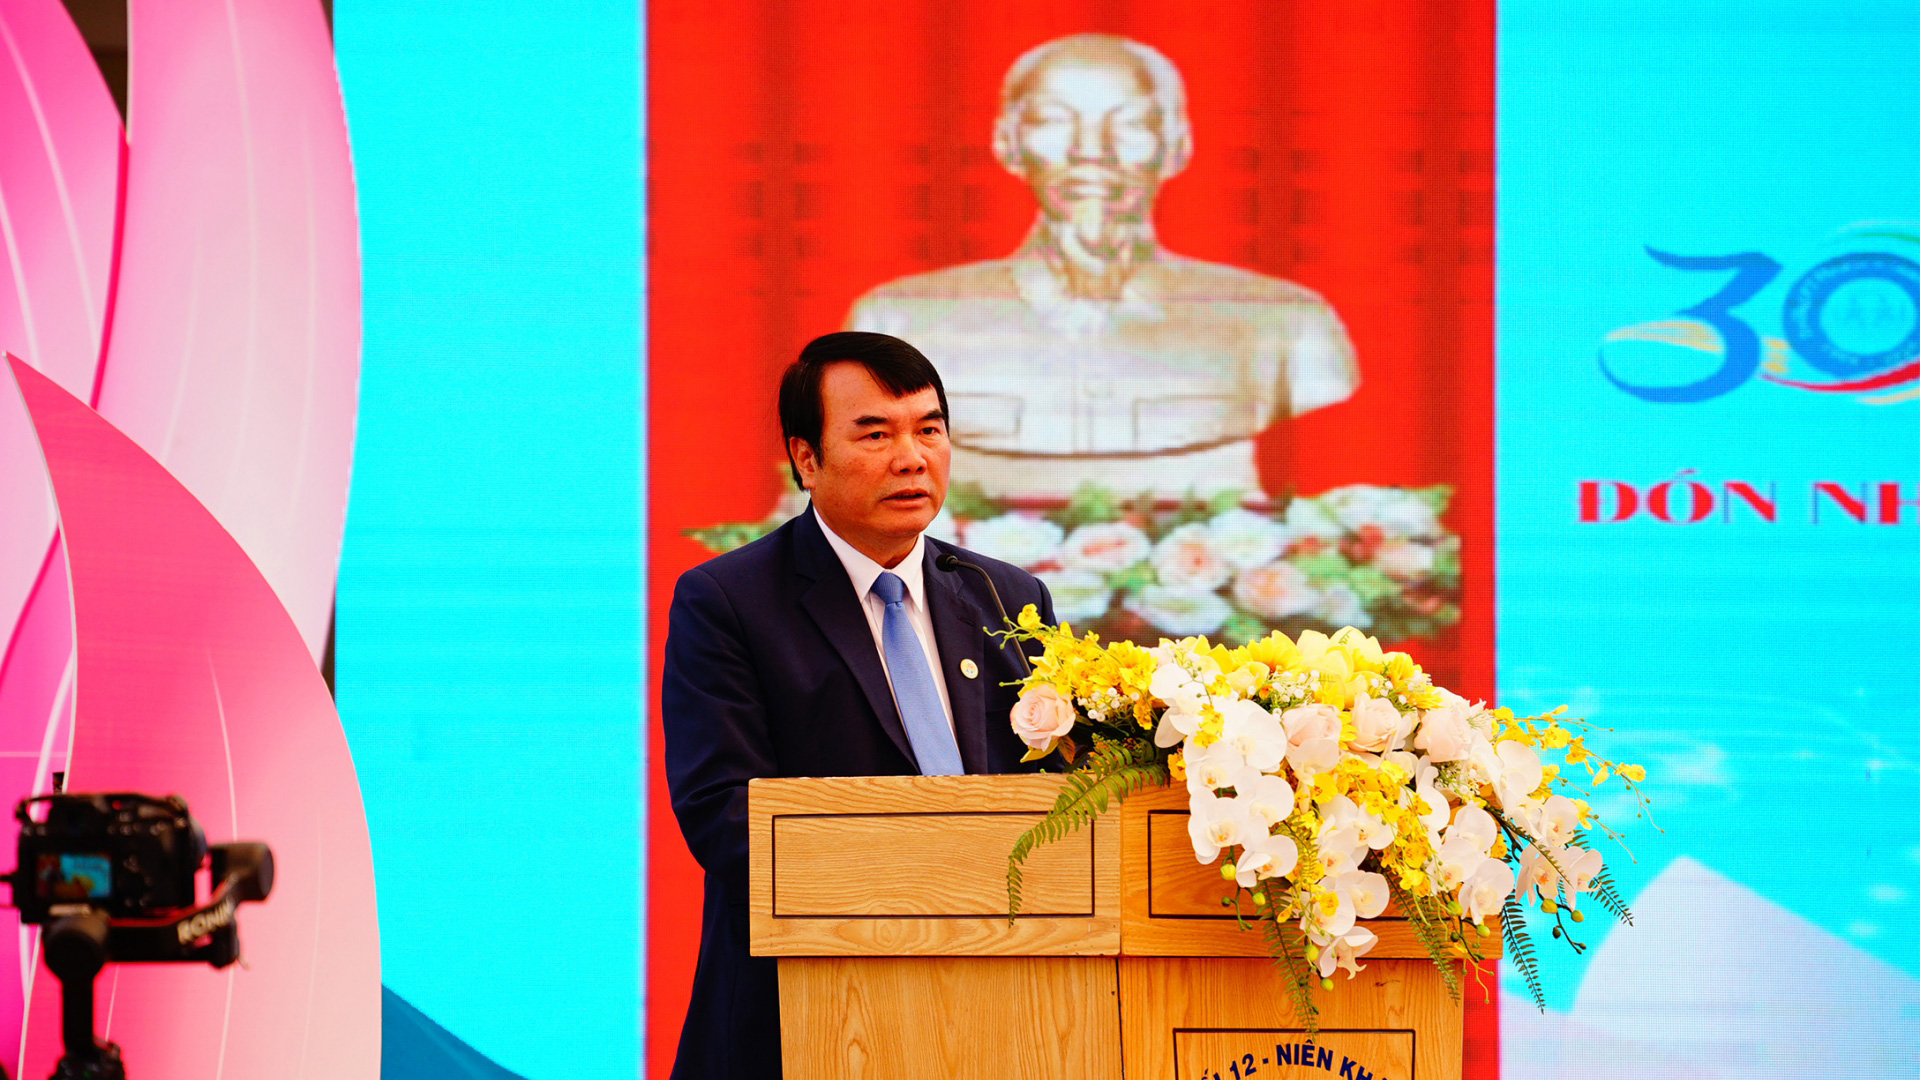 Đồng chí Phạm S - Phó Chủ tịch UBND tỉnh, phát biểu tại buổi lễ